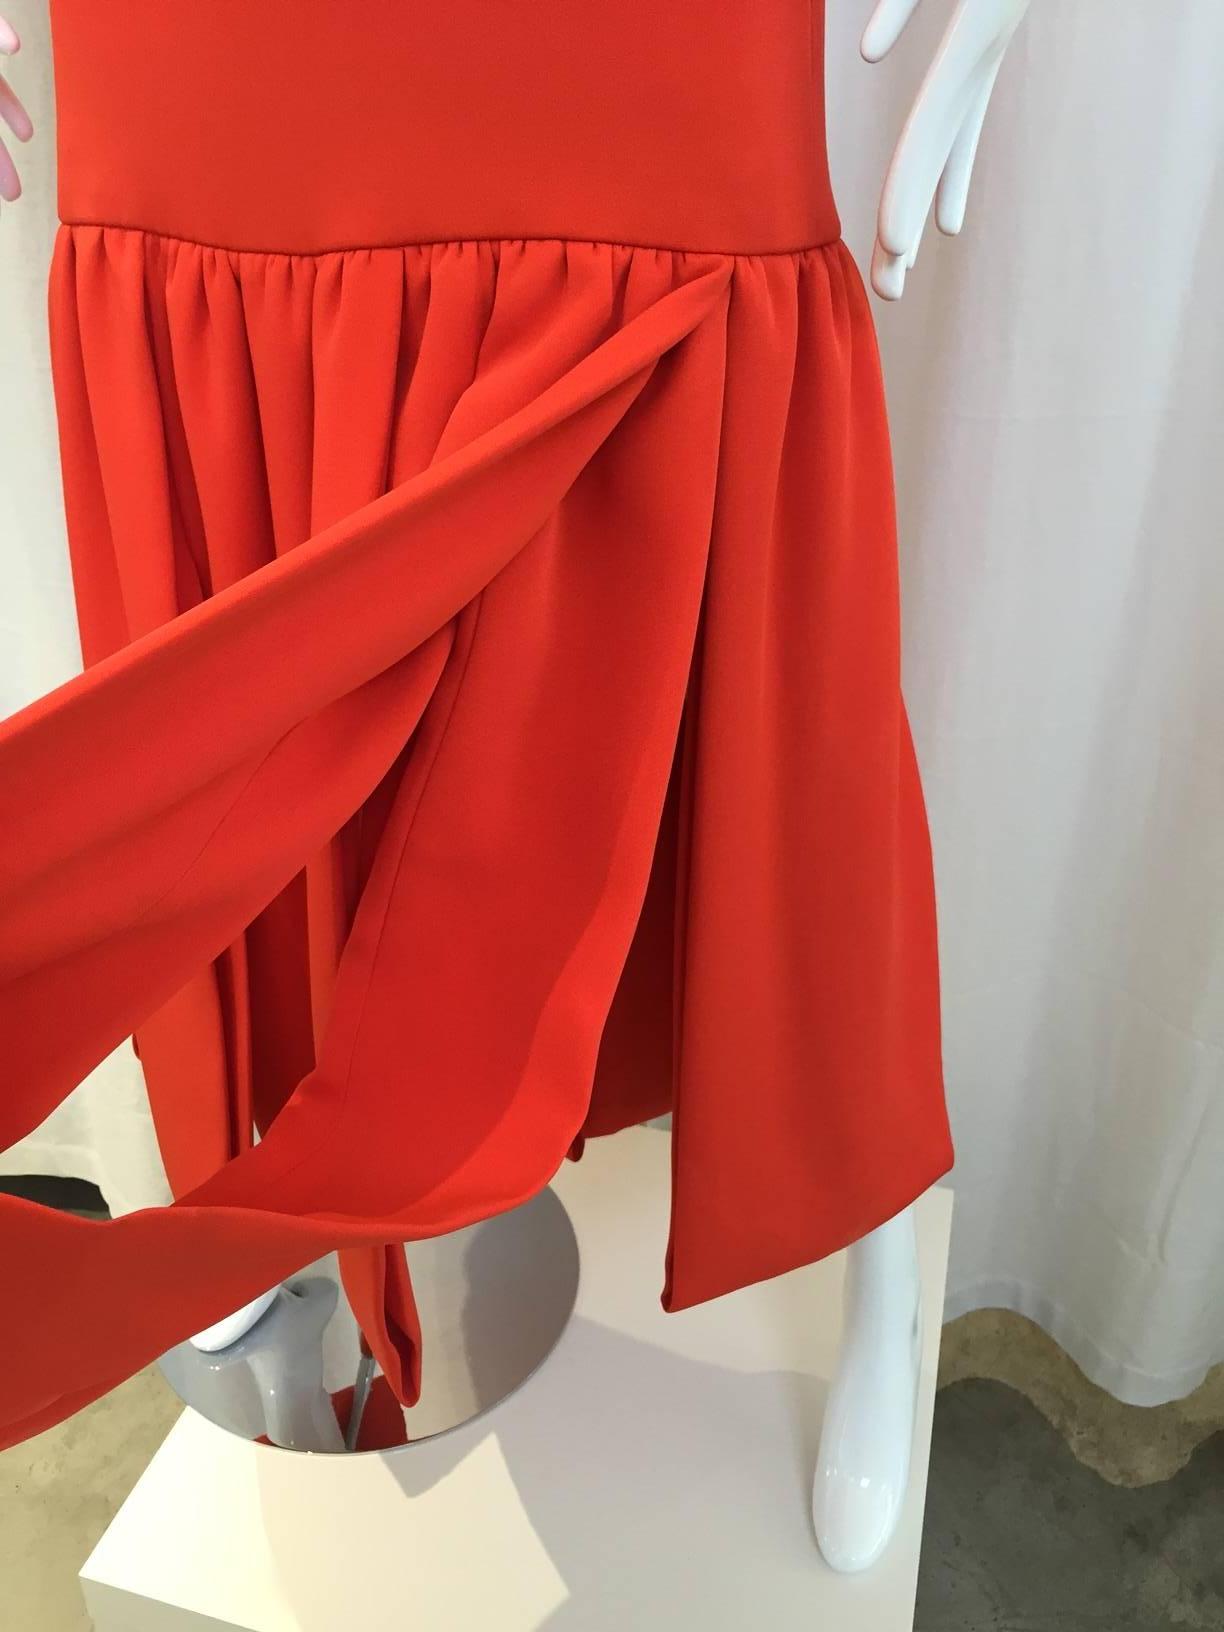 Pierre cardin orange silk dress. Size: 6
Shoulder: 14inches; 
Bust: 36 inches/ waist: 36